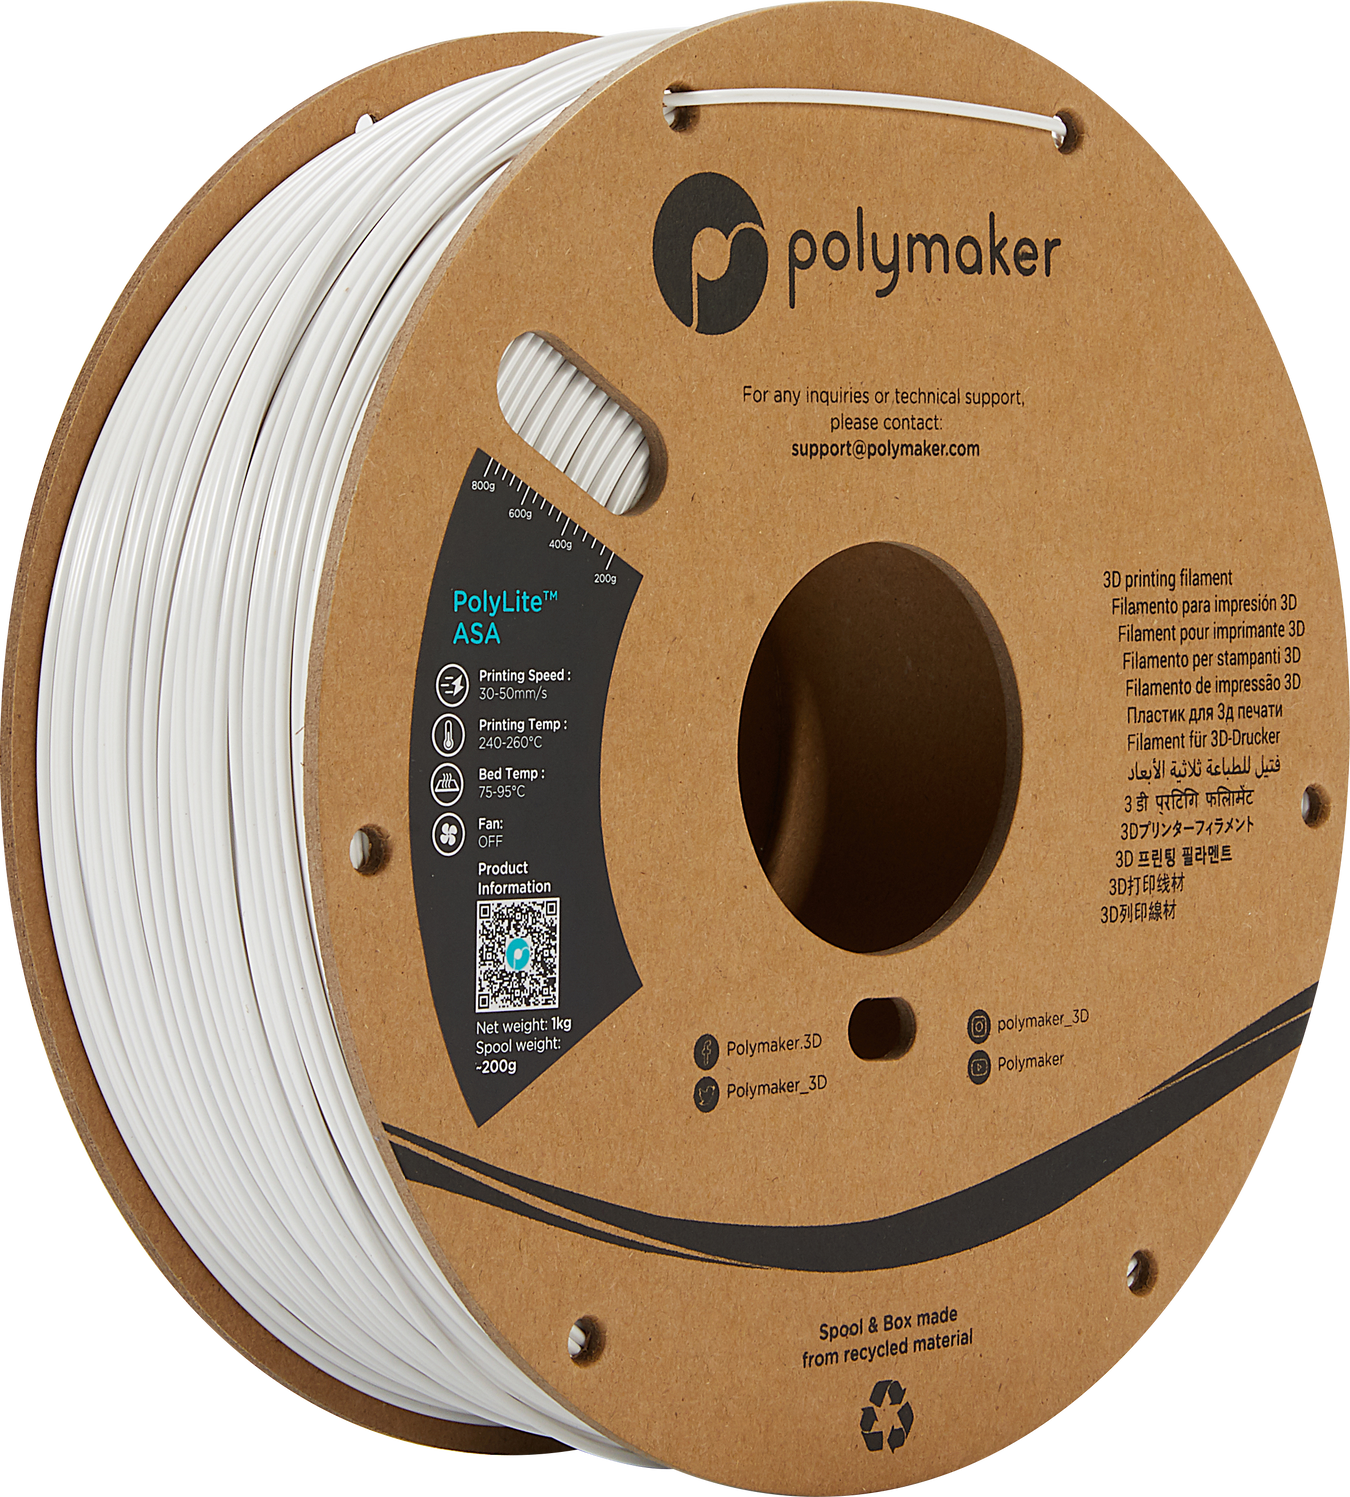 ポリメーカ(Polymaker) 3Dプリンター用ポリカーボネート製フィラメント ポリメーカ(Polymaker) PolyMax PC 